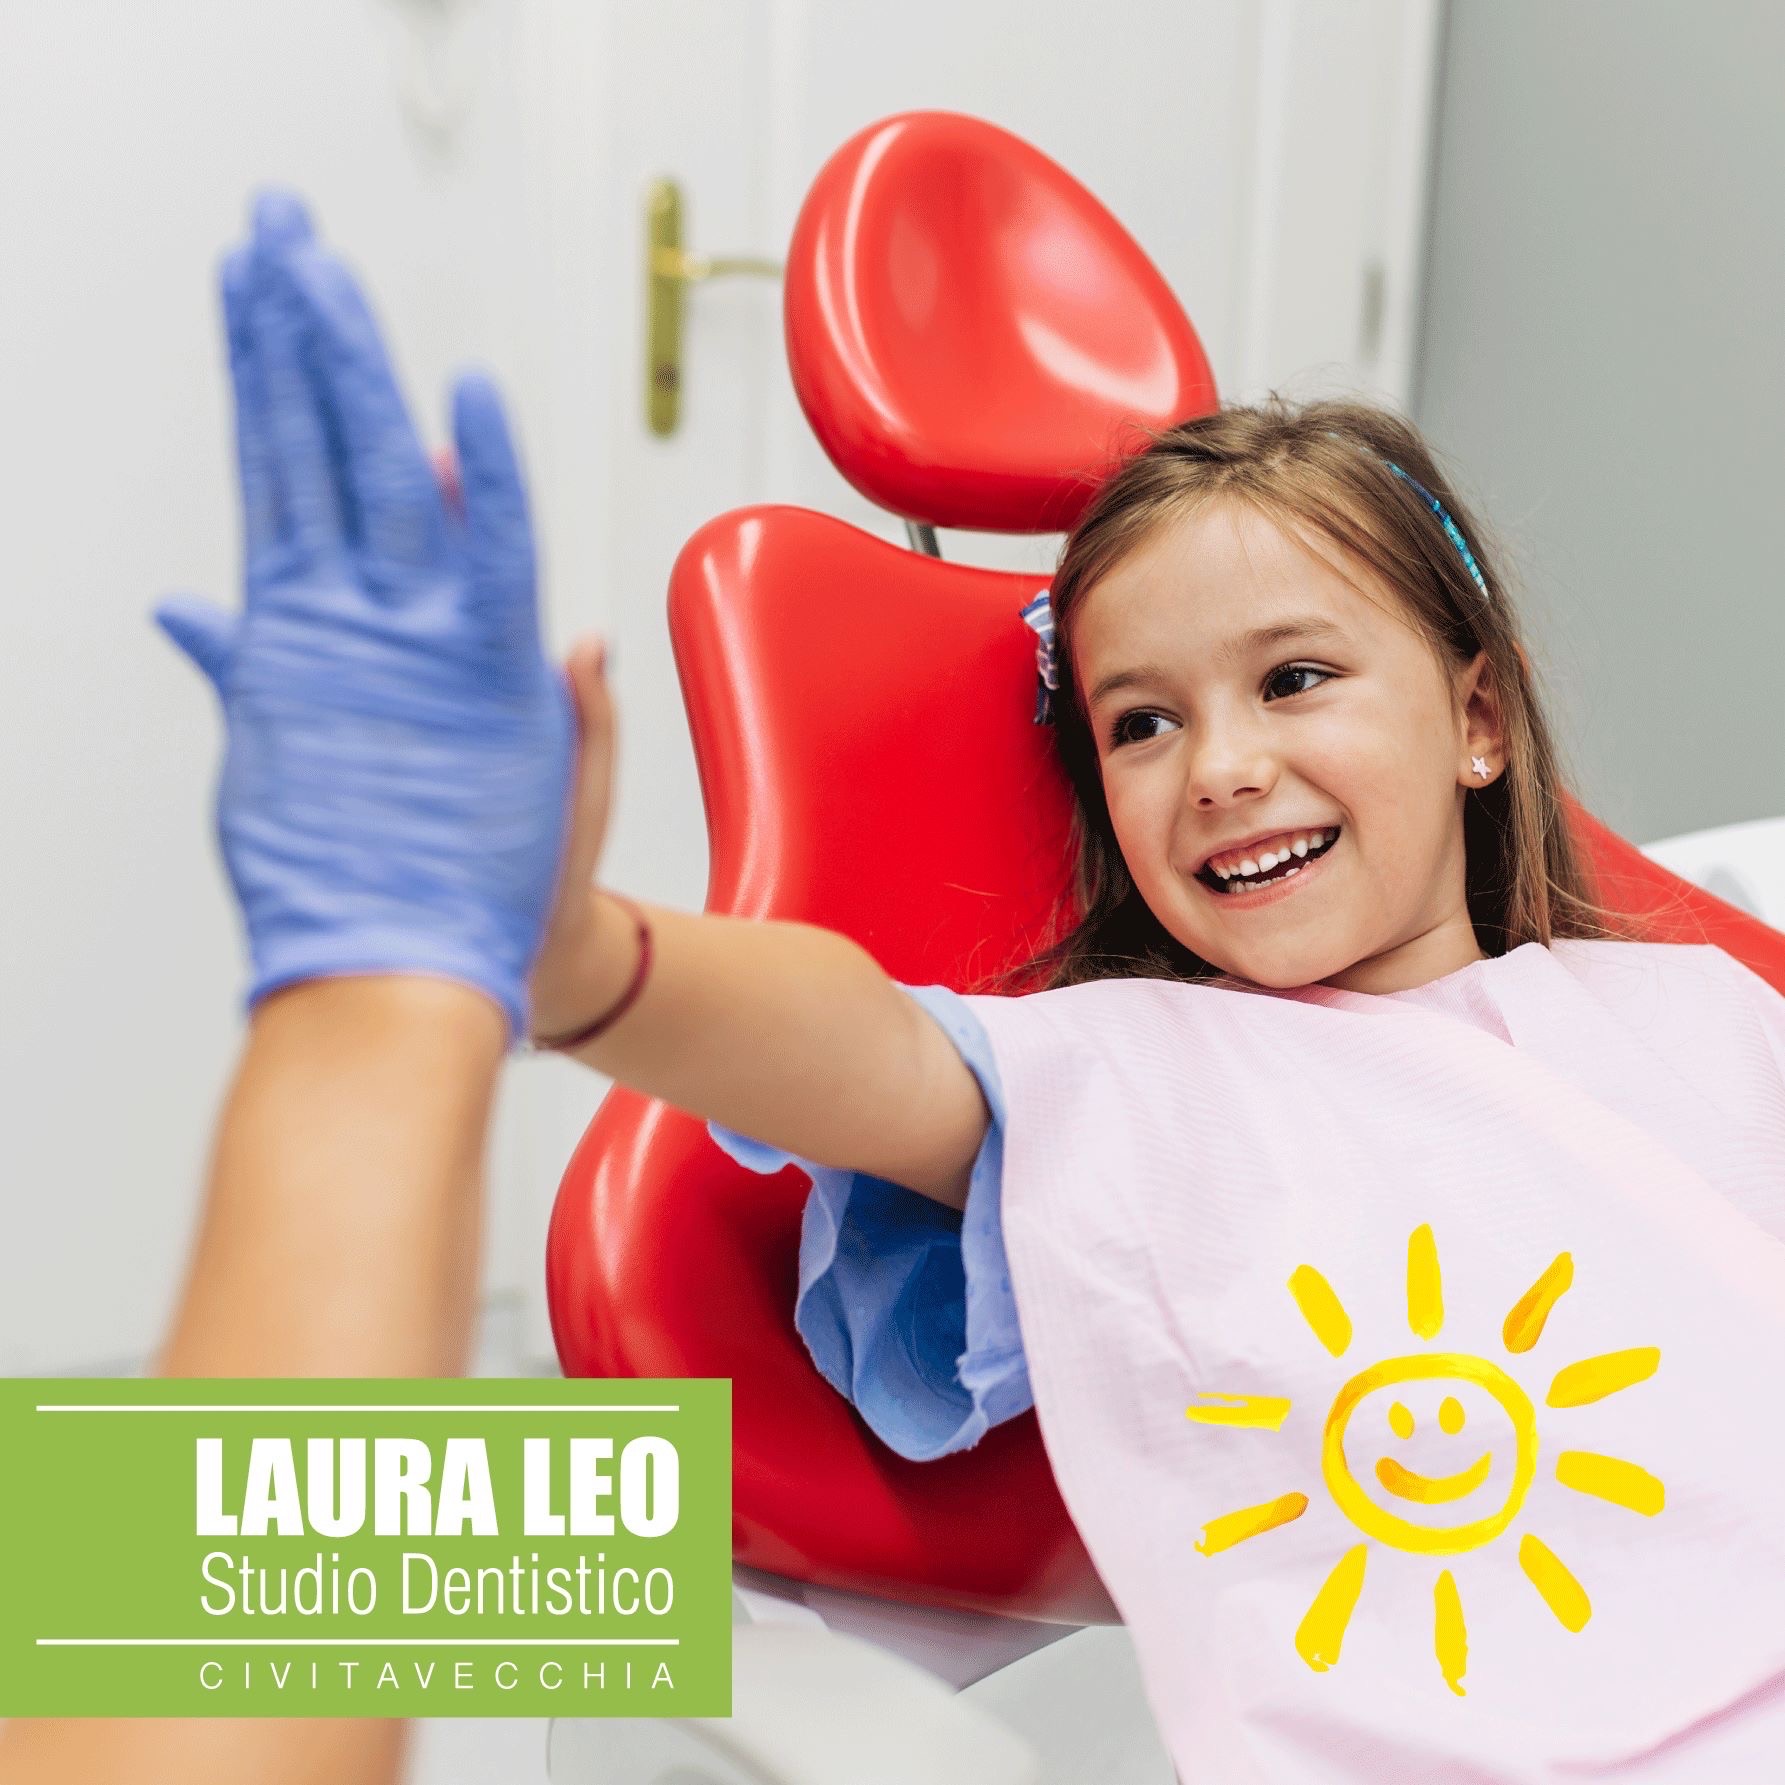 Studio Dentistico Laura Leo - Terapie - PEDODONZIA